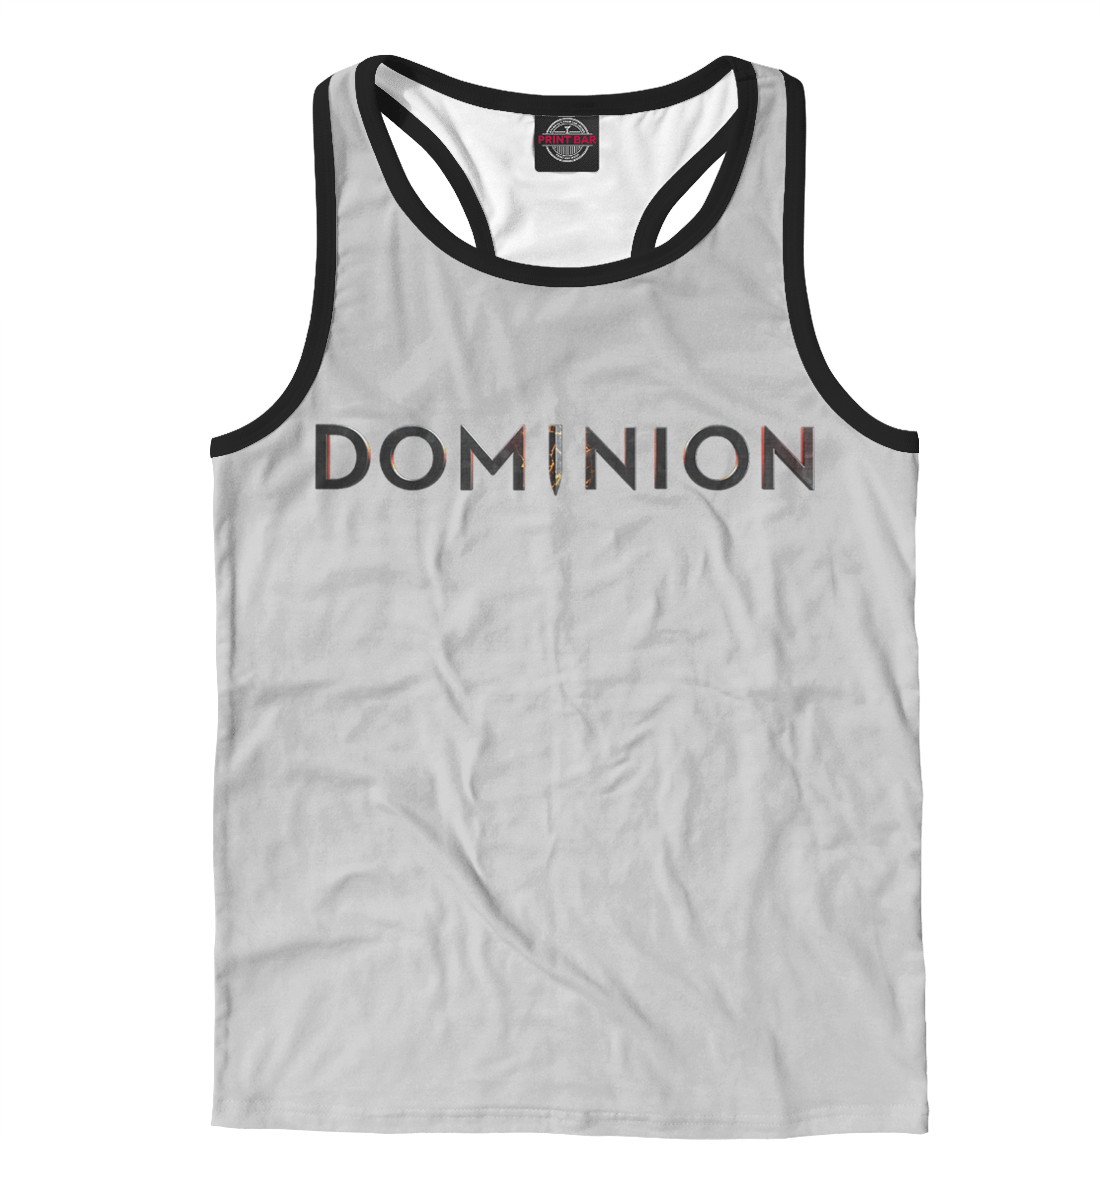 

Dominion